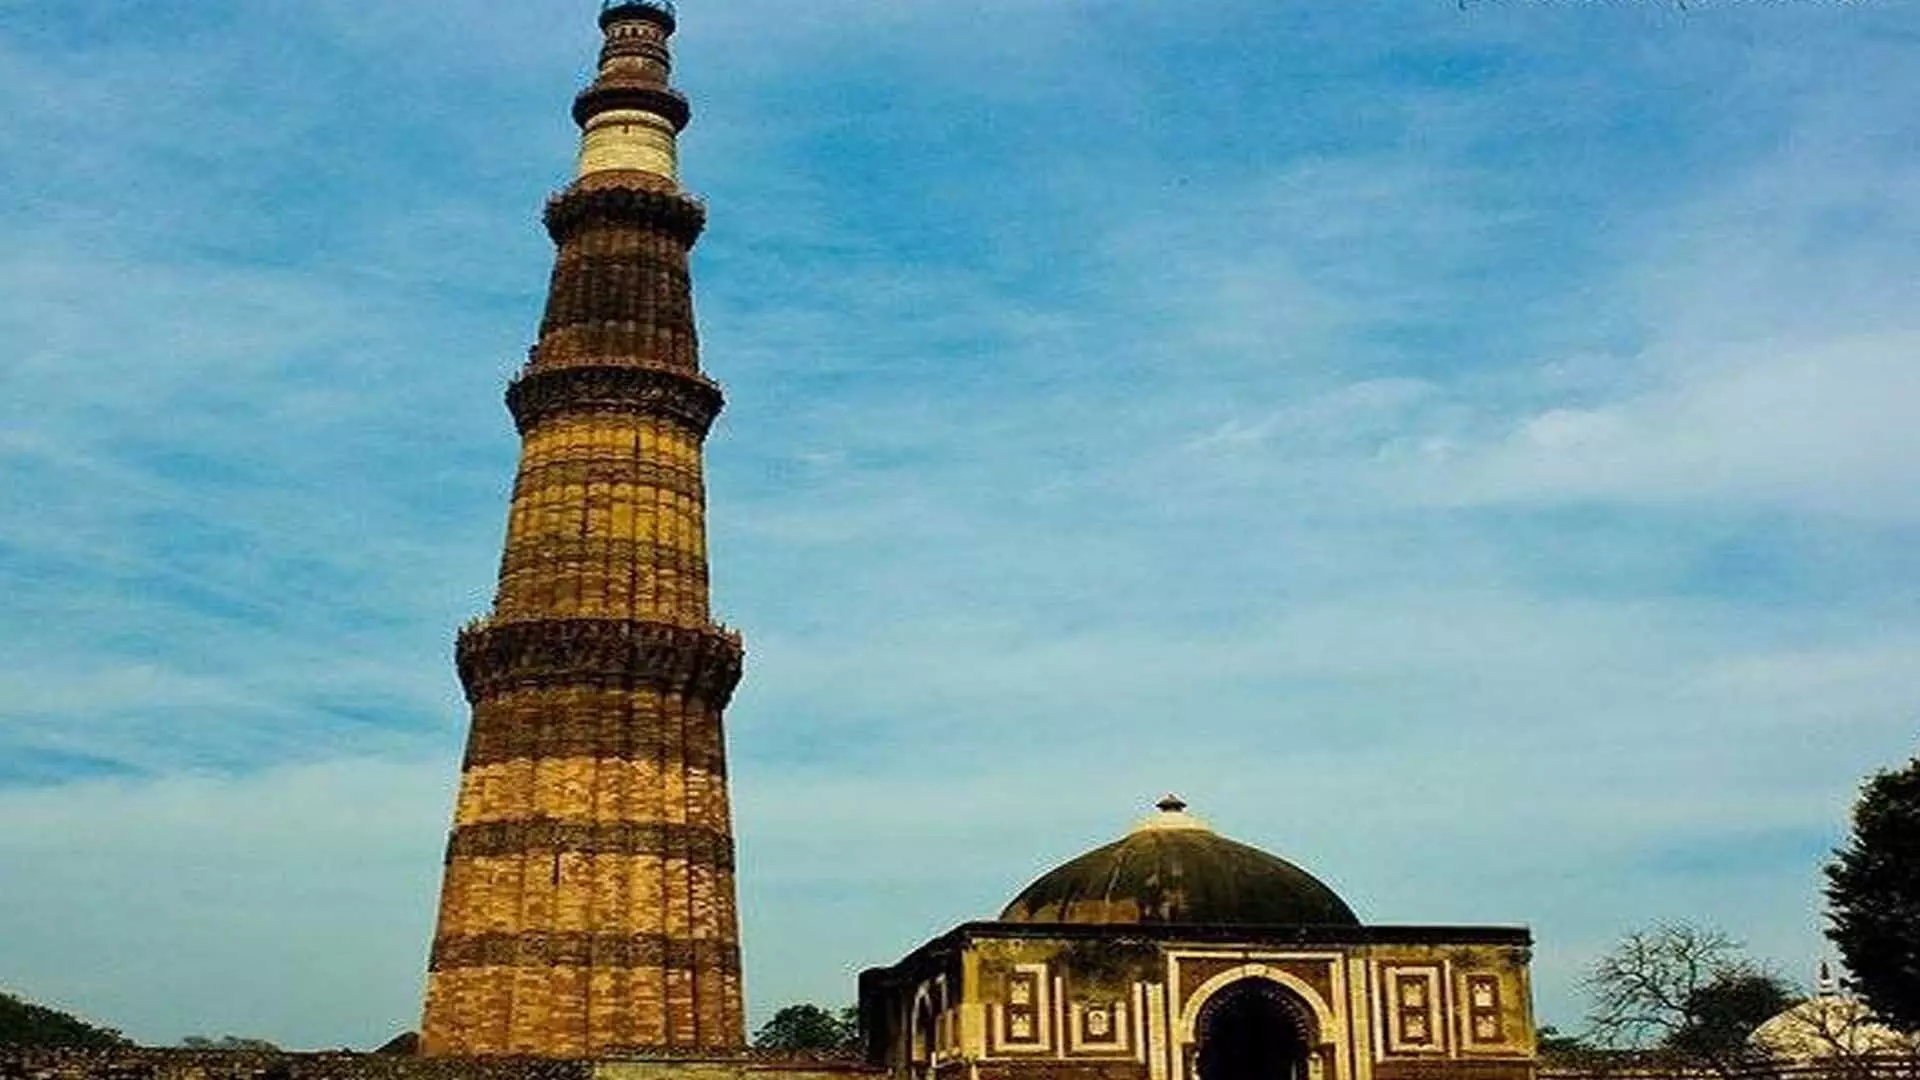 famous minarets: अपनी उंचाई के लिए प्रसिद्द हैं भारत की ये मीनारें अनोखा इतिहास